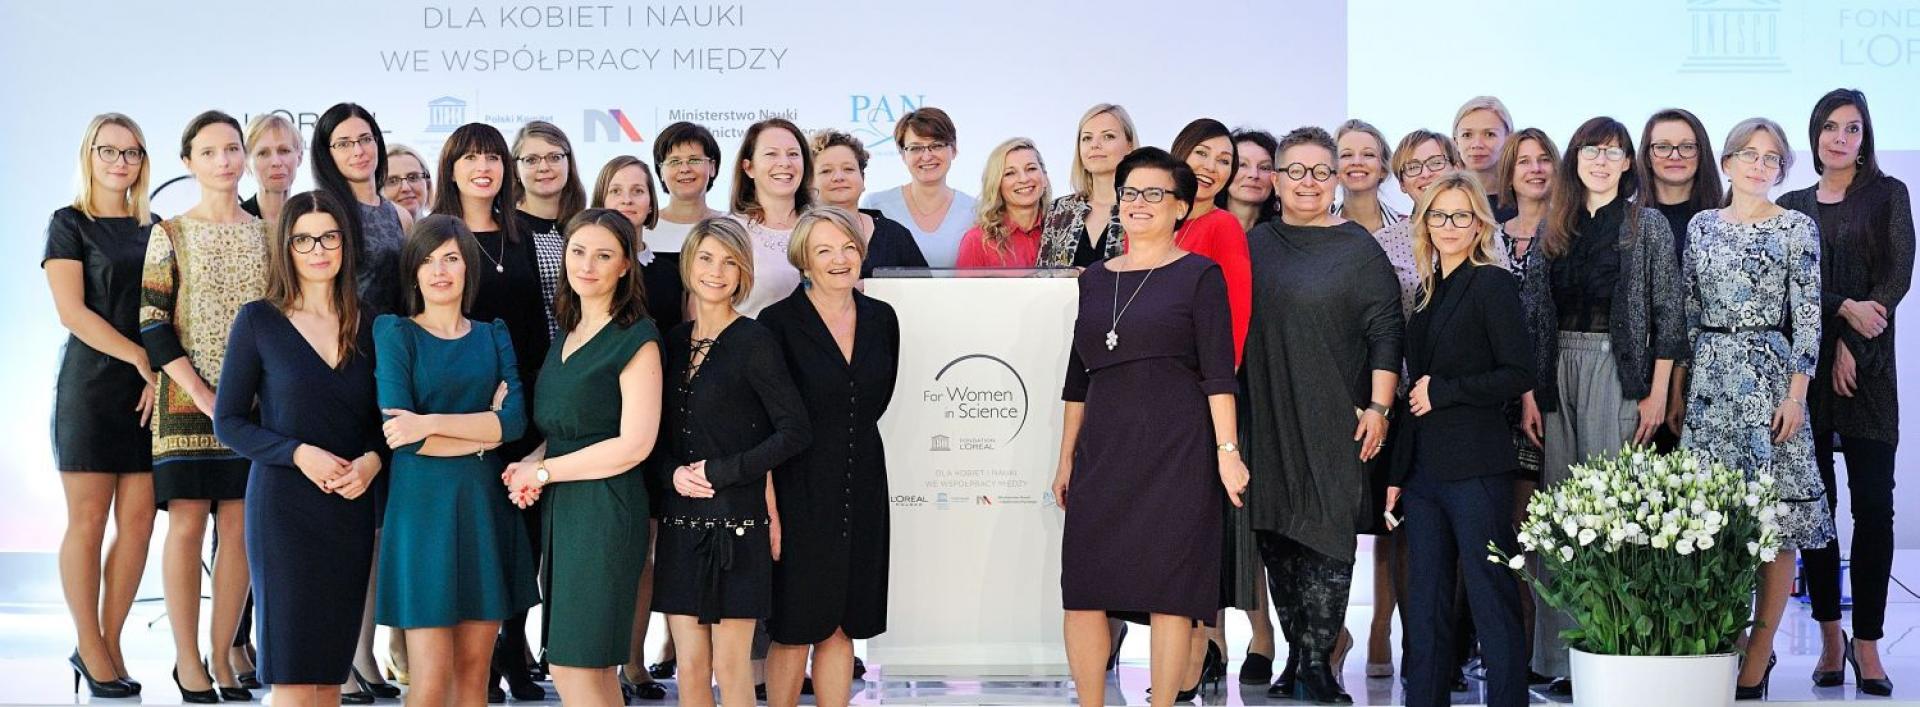 Talent i pasja kobiet zmieniają naukę – genialne badaczki ponownie wyróżnione przez L’Oréal